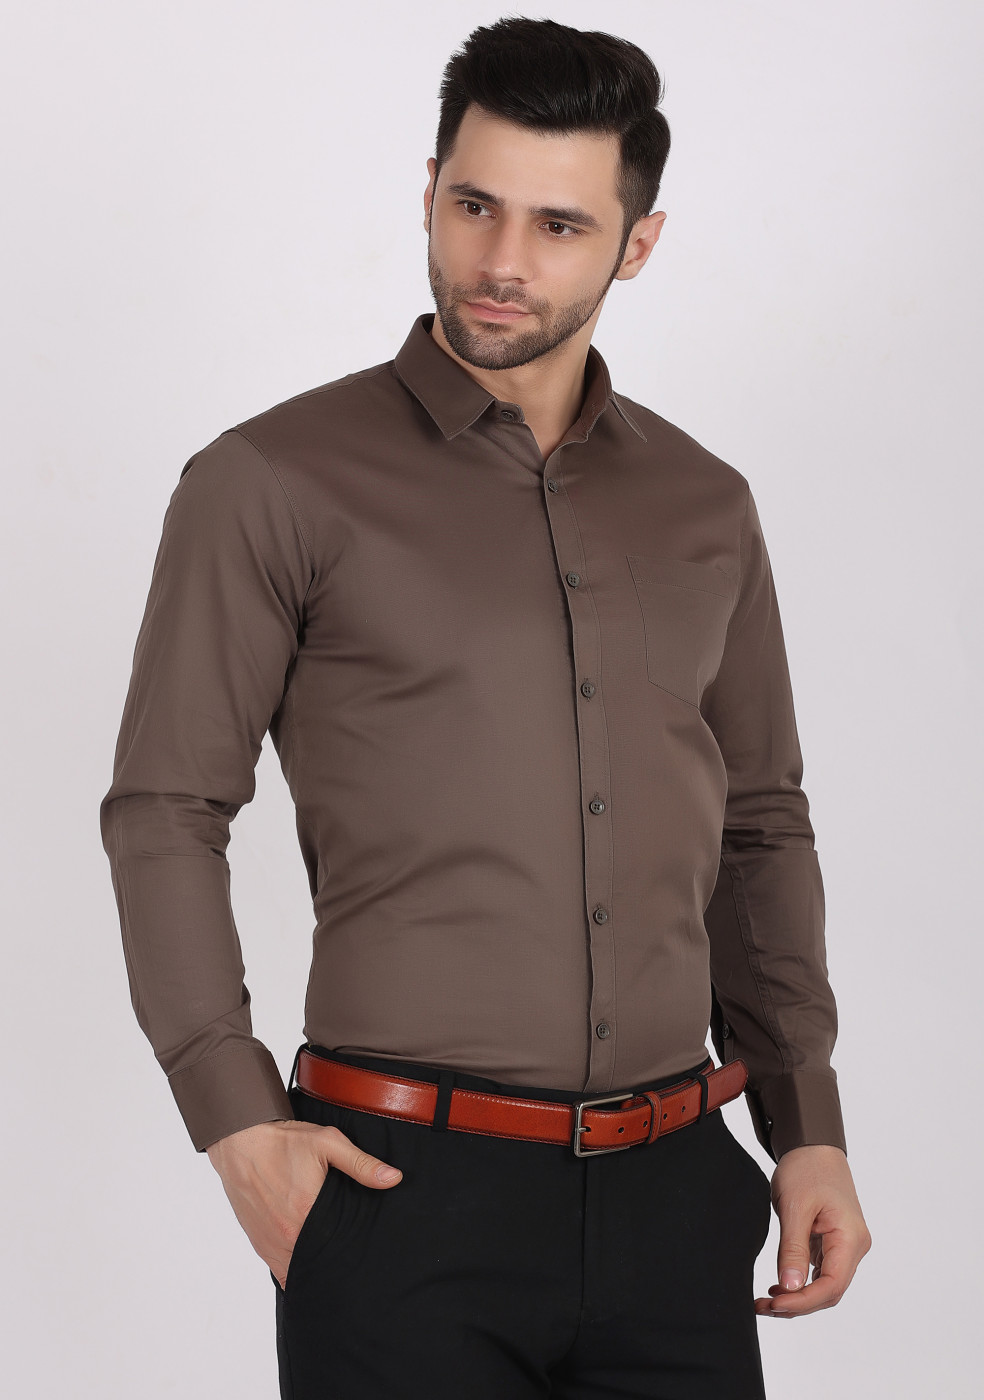 ASHTOM Dark Gray Plain Cotton Shirt For Men